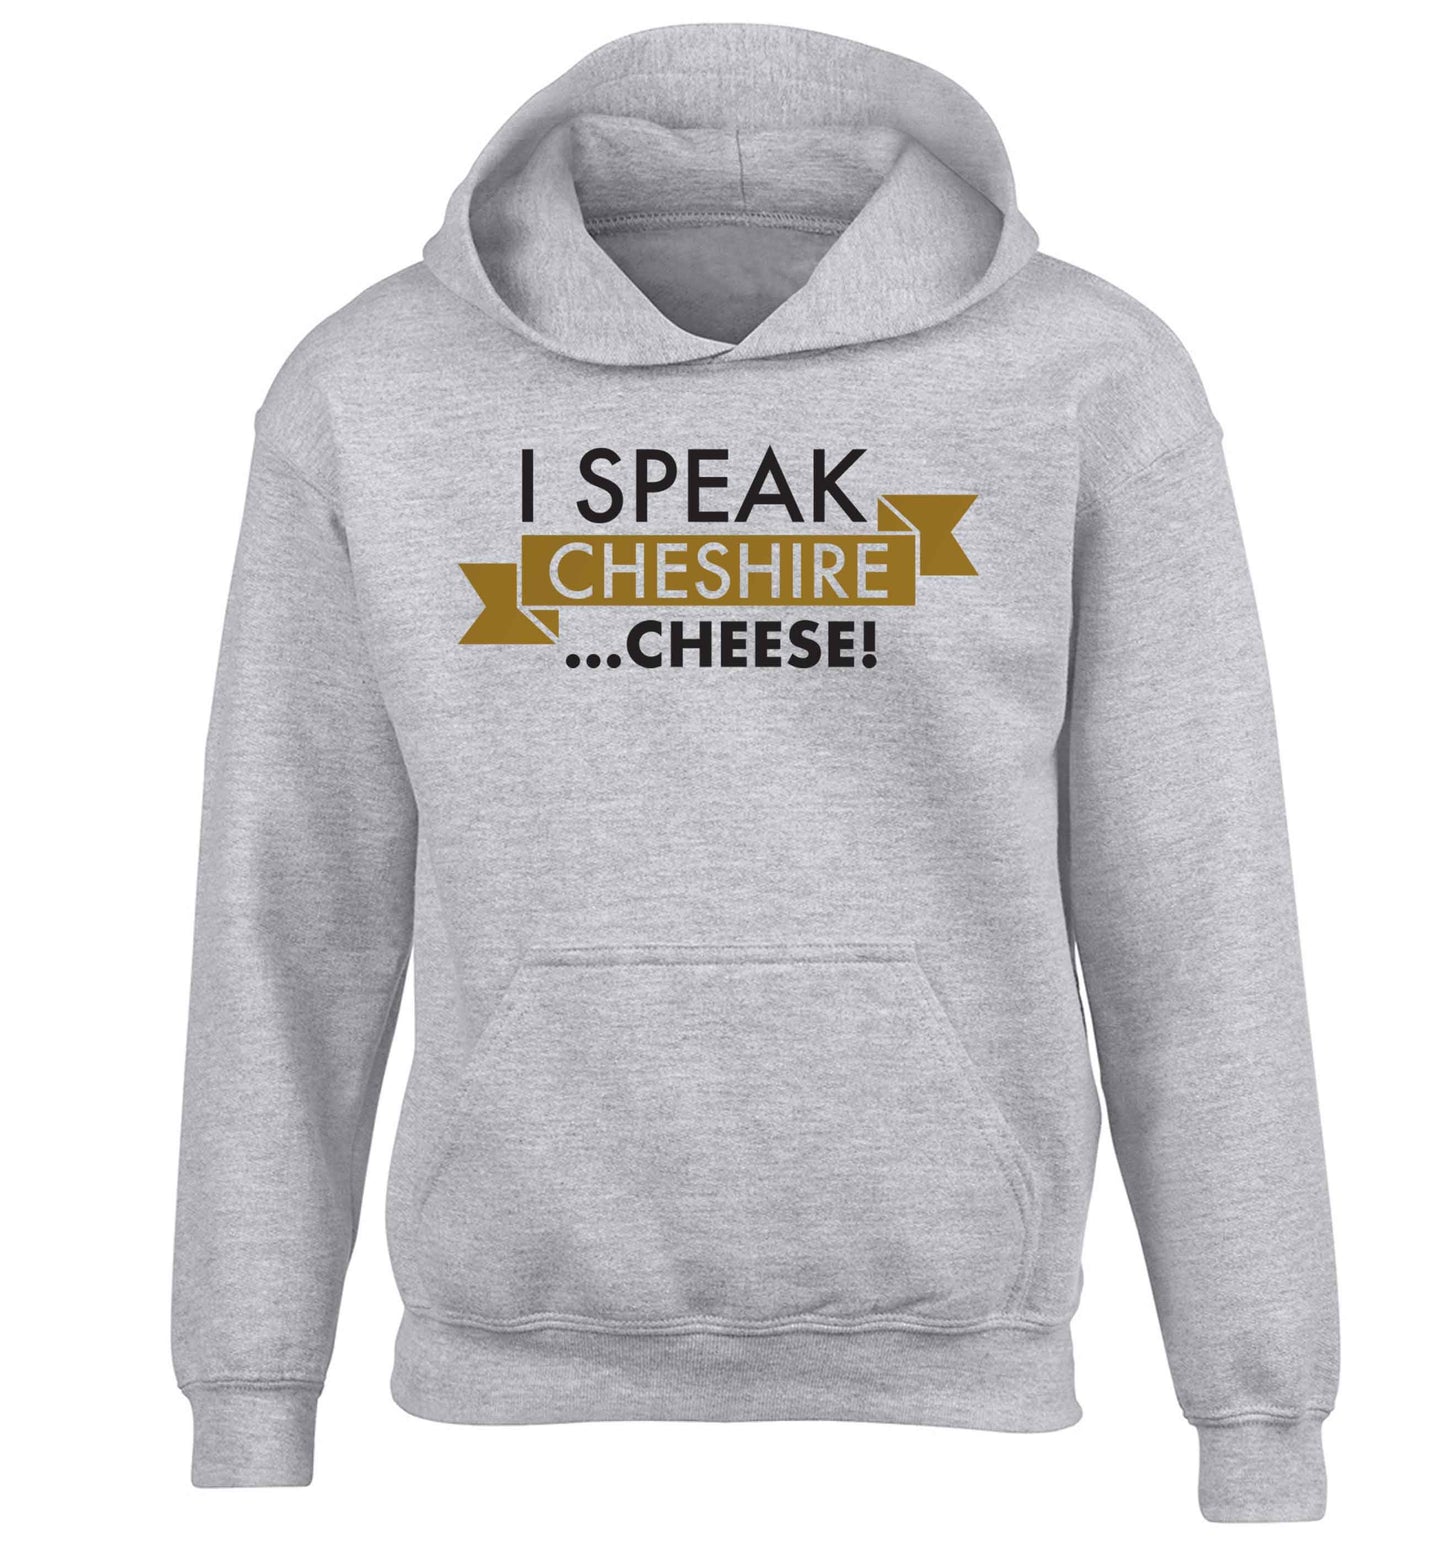 I speak Cheshire cheese children's grey hoodie 12-13 Years